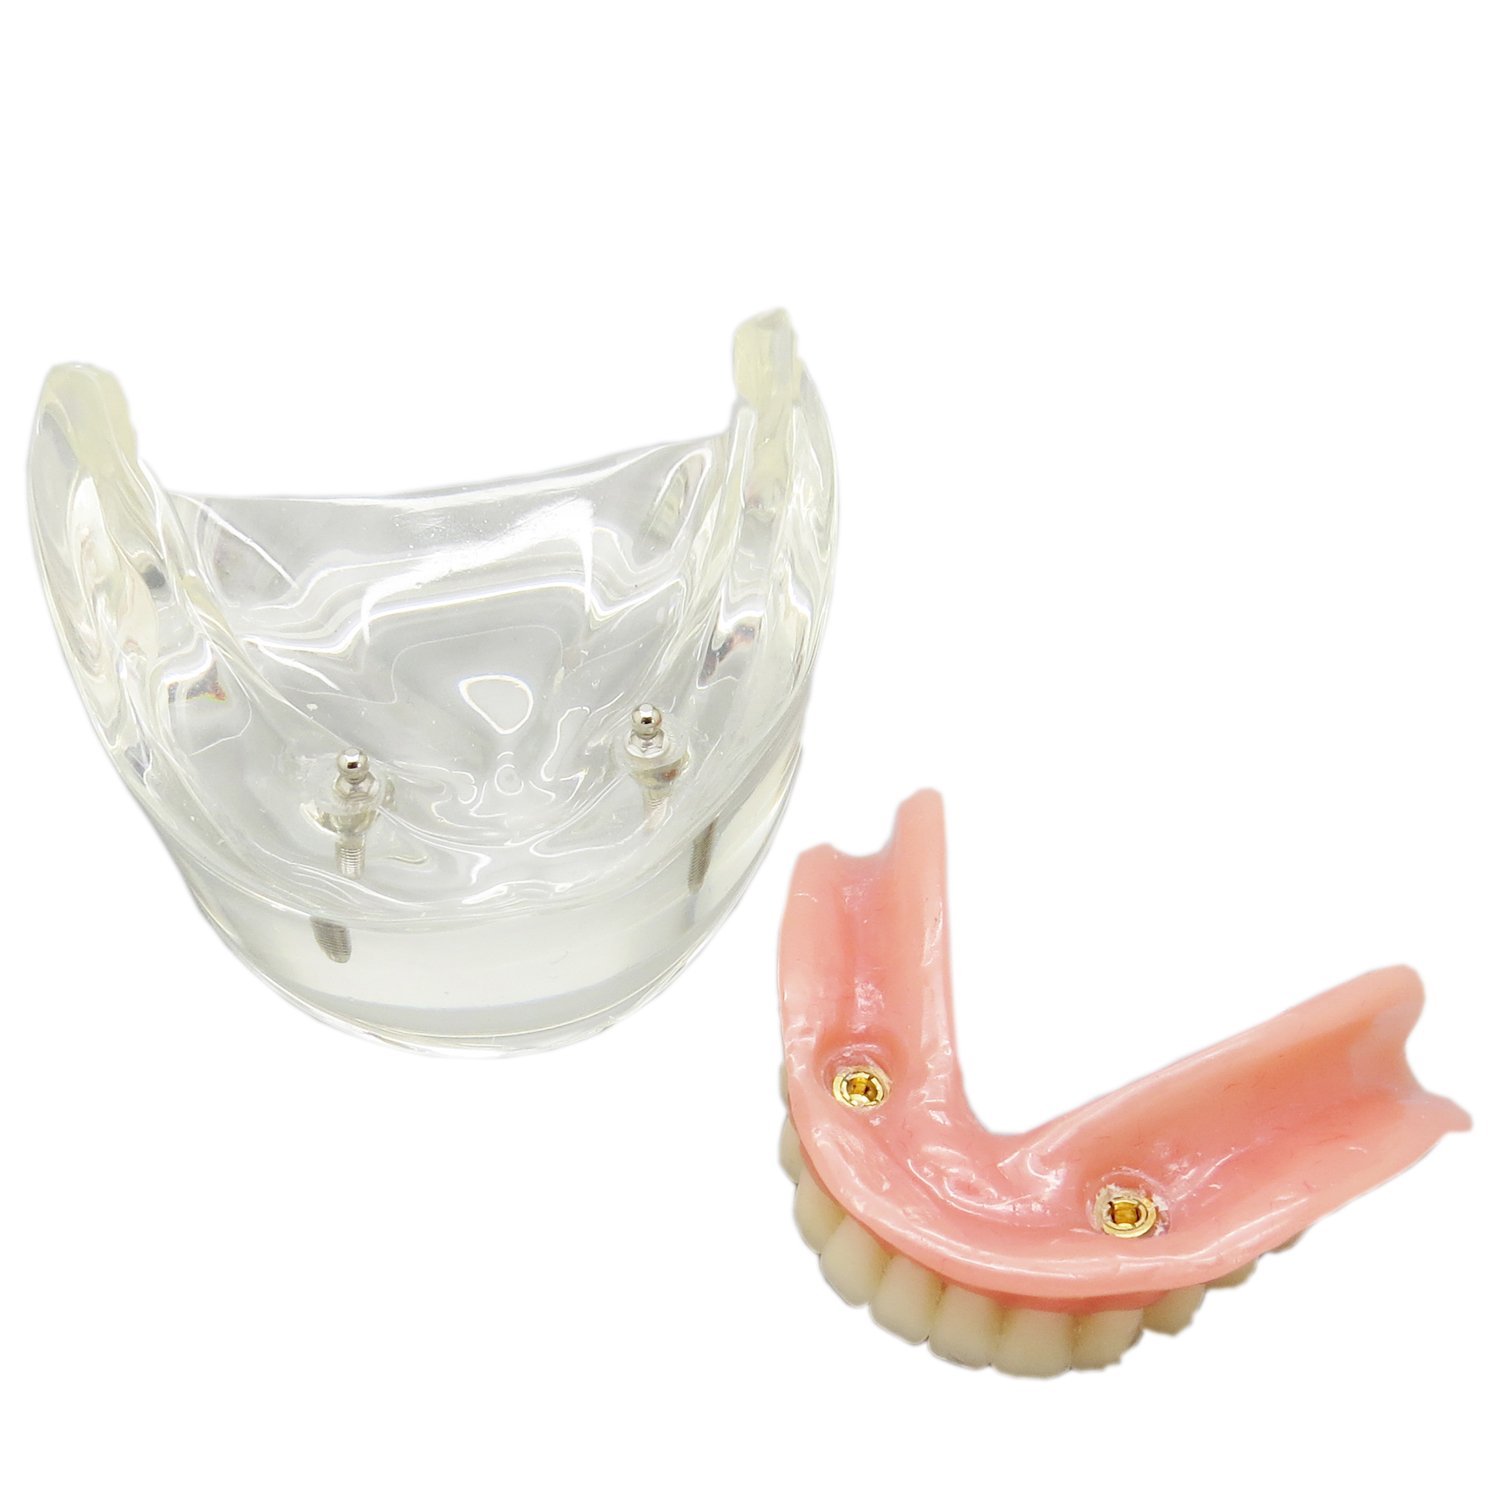 歯科下顎インプラントモデル模型 取り外し可能 高品質歯科インプラント研究治療説明用歯列模型 2本釘 透明 クリアベース|歯科インプラント模型 通販-Dentalshop.JP